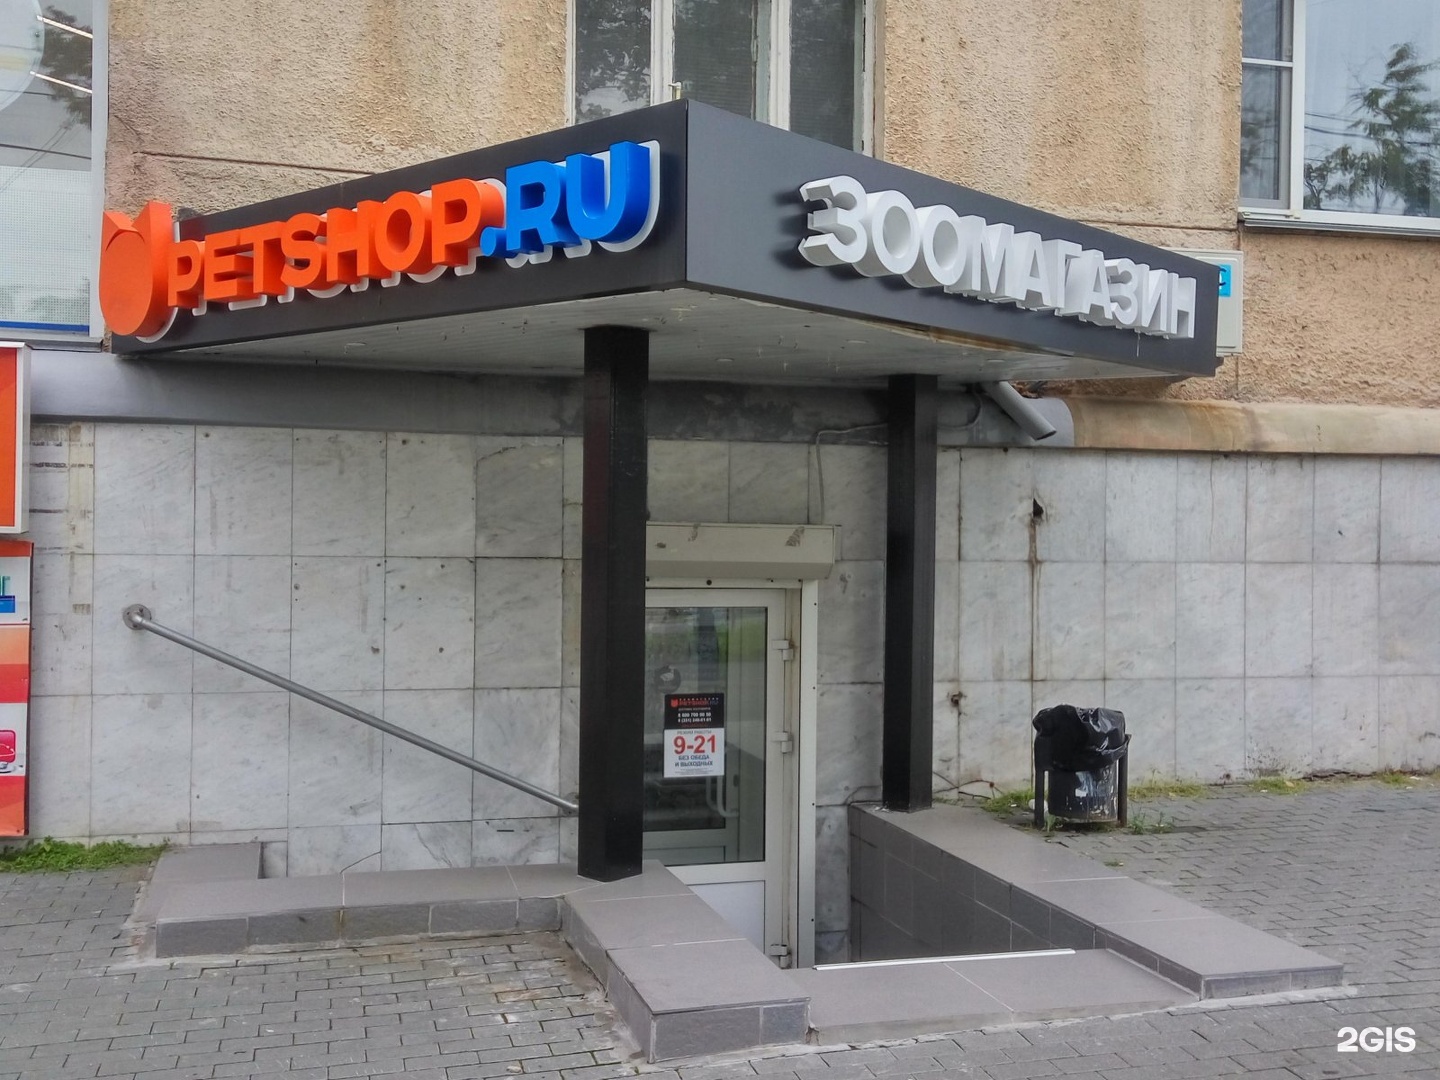 Petshop Ru Интернет Магазин Челябинск